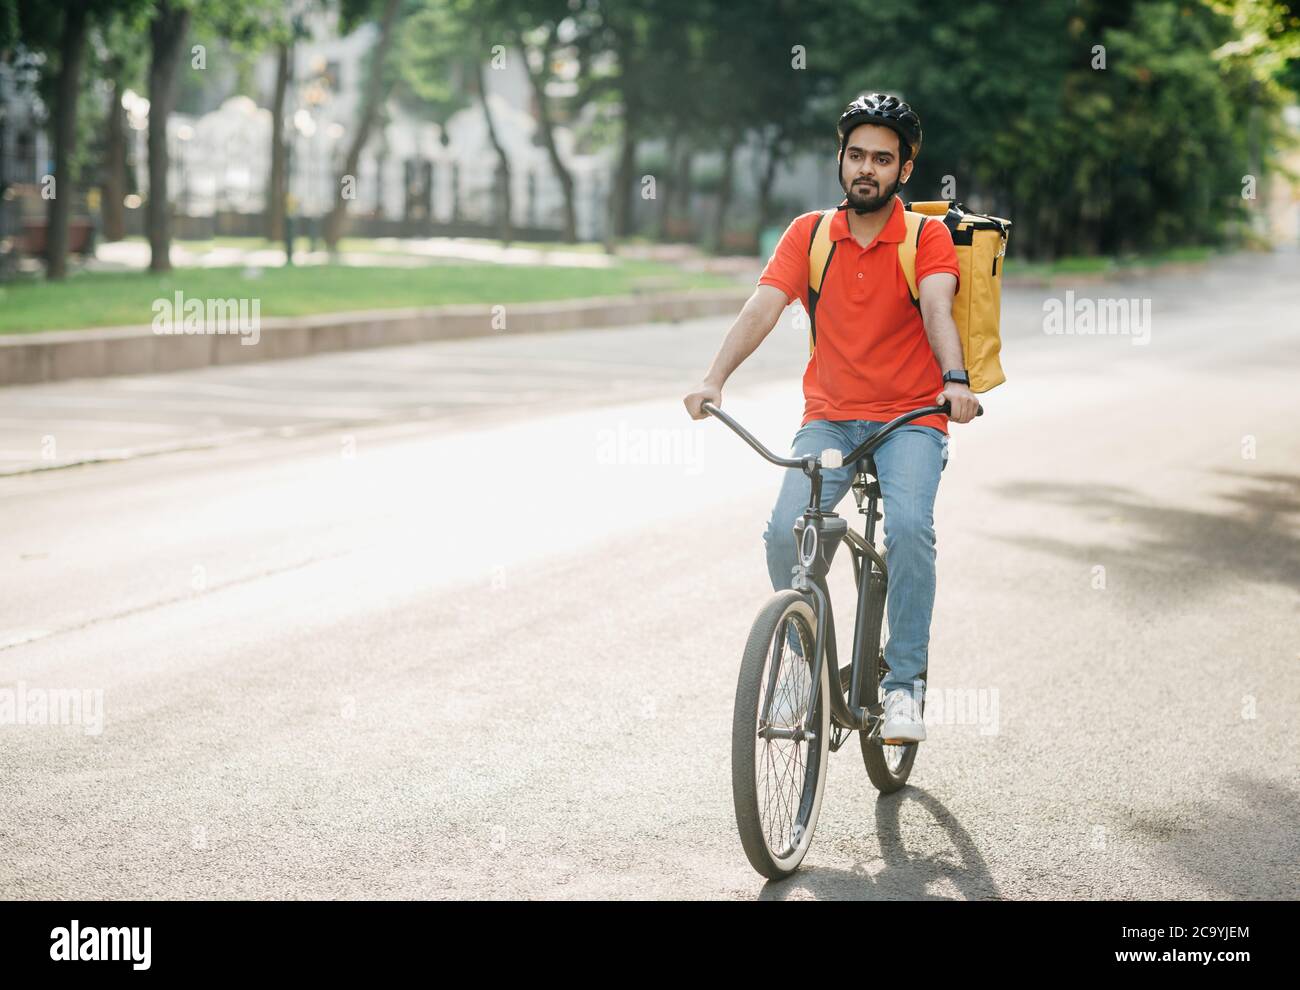 Entrega moderna en la ciudad. Hombre joven en casco con bolso paseos en bicicleta Foto de stock